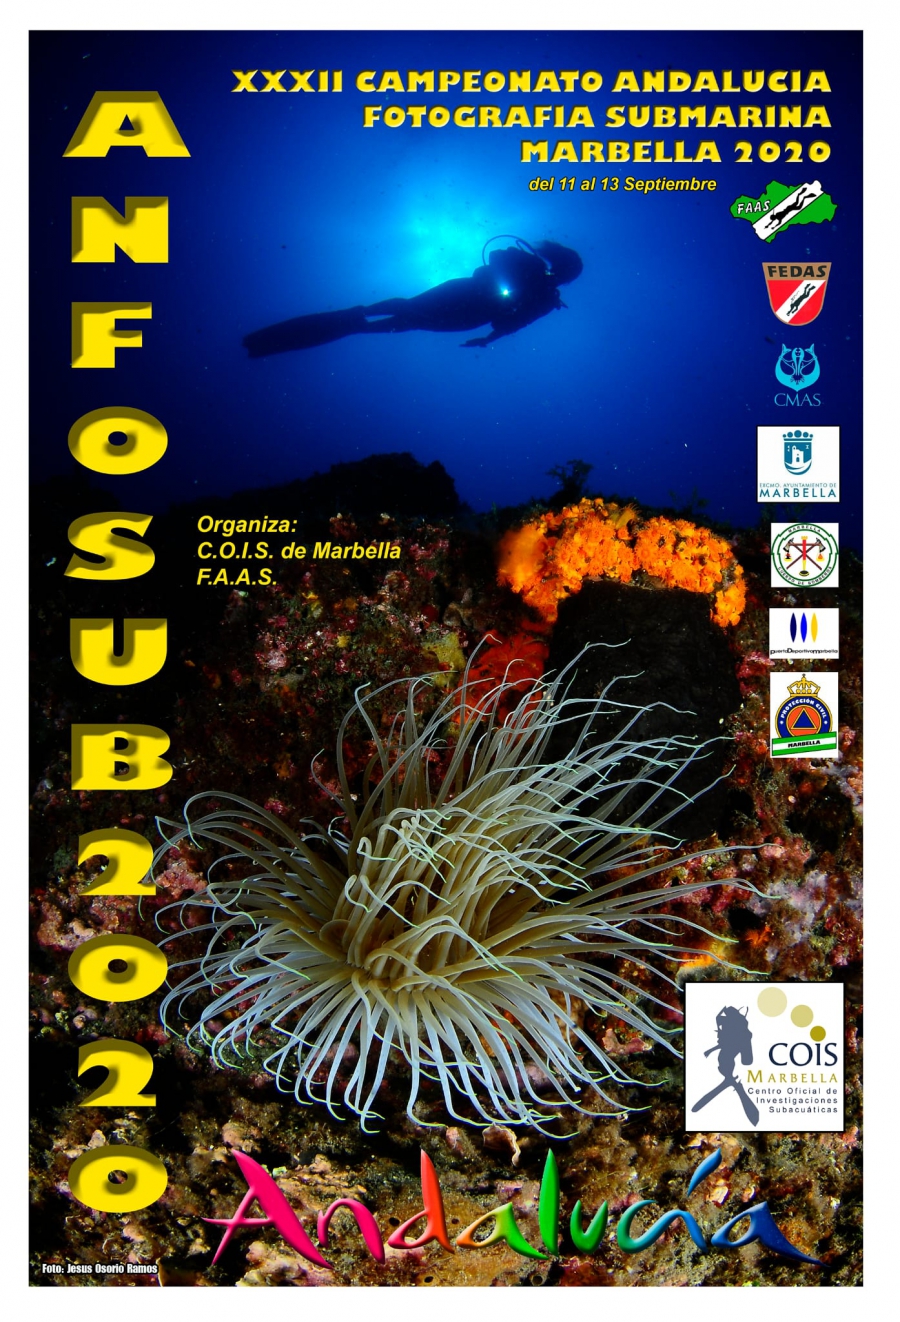 Marbella acoge este fin de semana el XXXII Campeonato de Andalucía de Fotografía Submarina que organiza el Centro Oficial de Investigaciones Subacuáticas